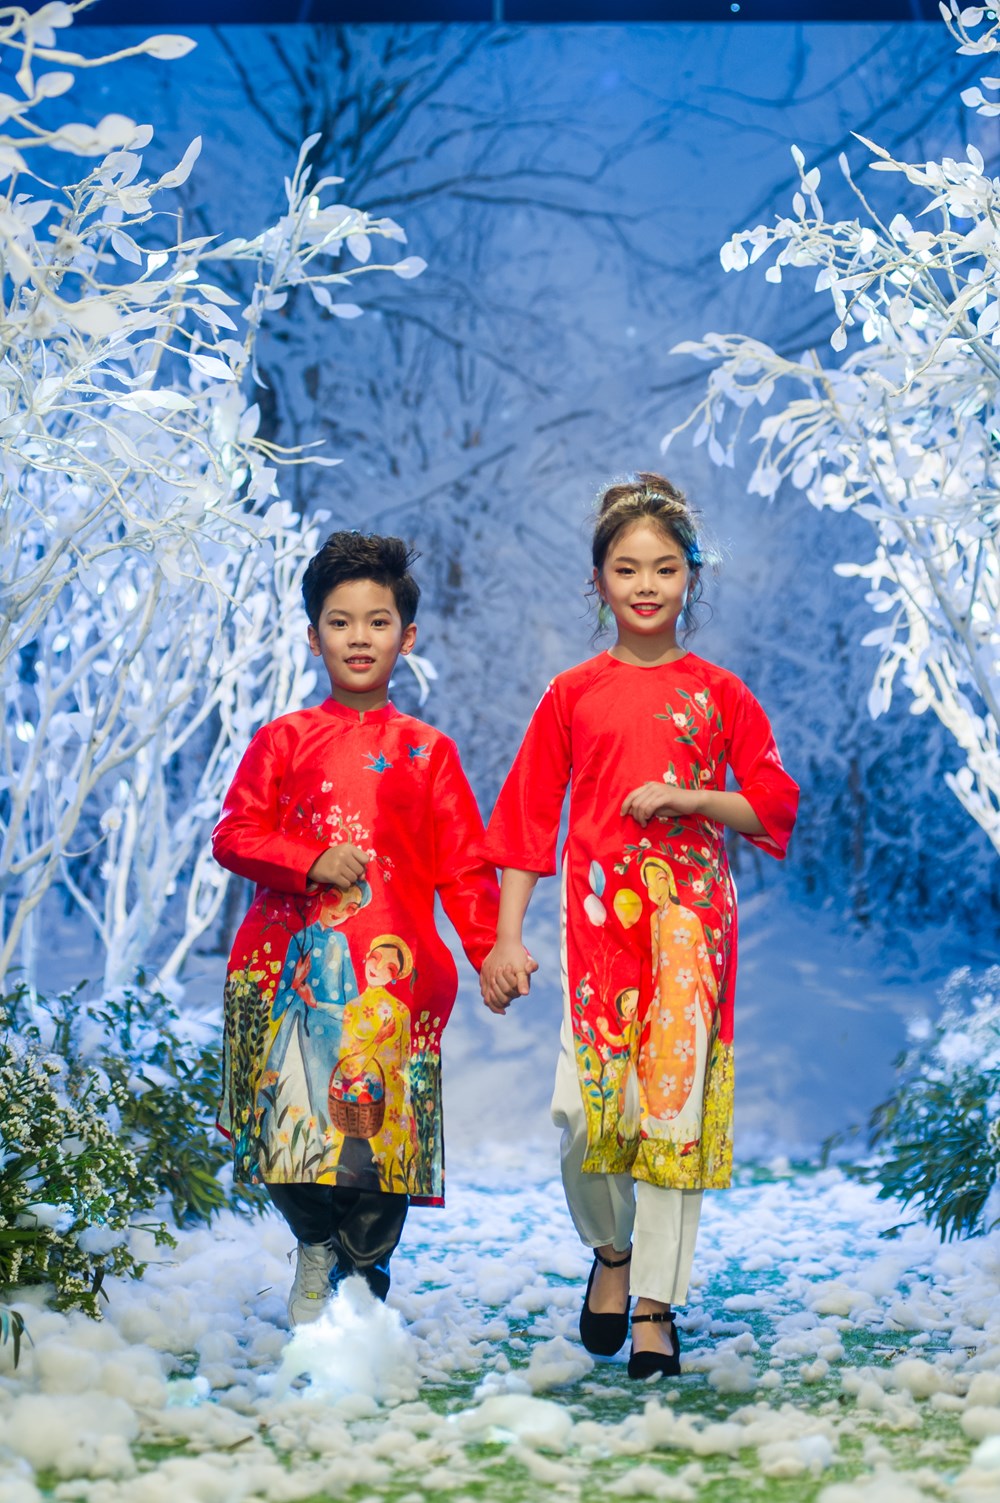 Tuần lễ thời trang trẻ em Việt Nam trên khu vườn tuyết trắng - ảnh 5